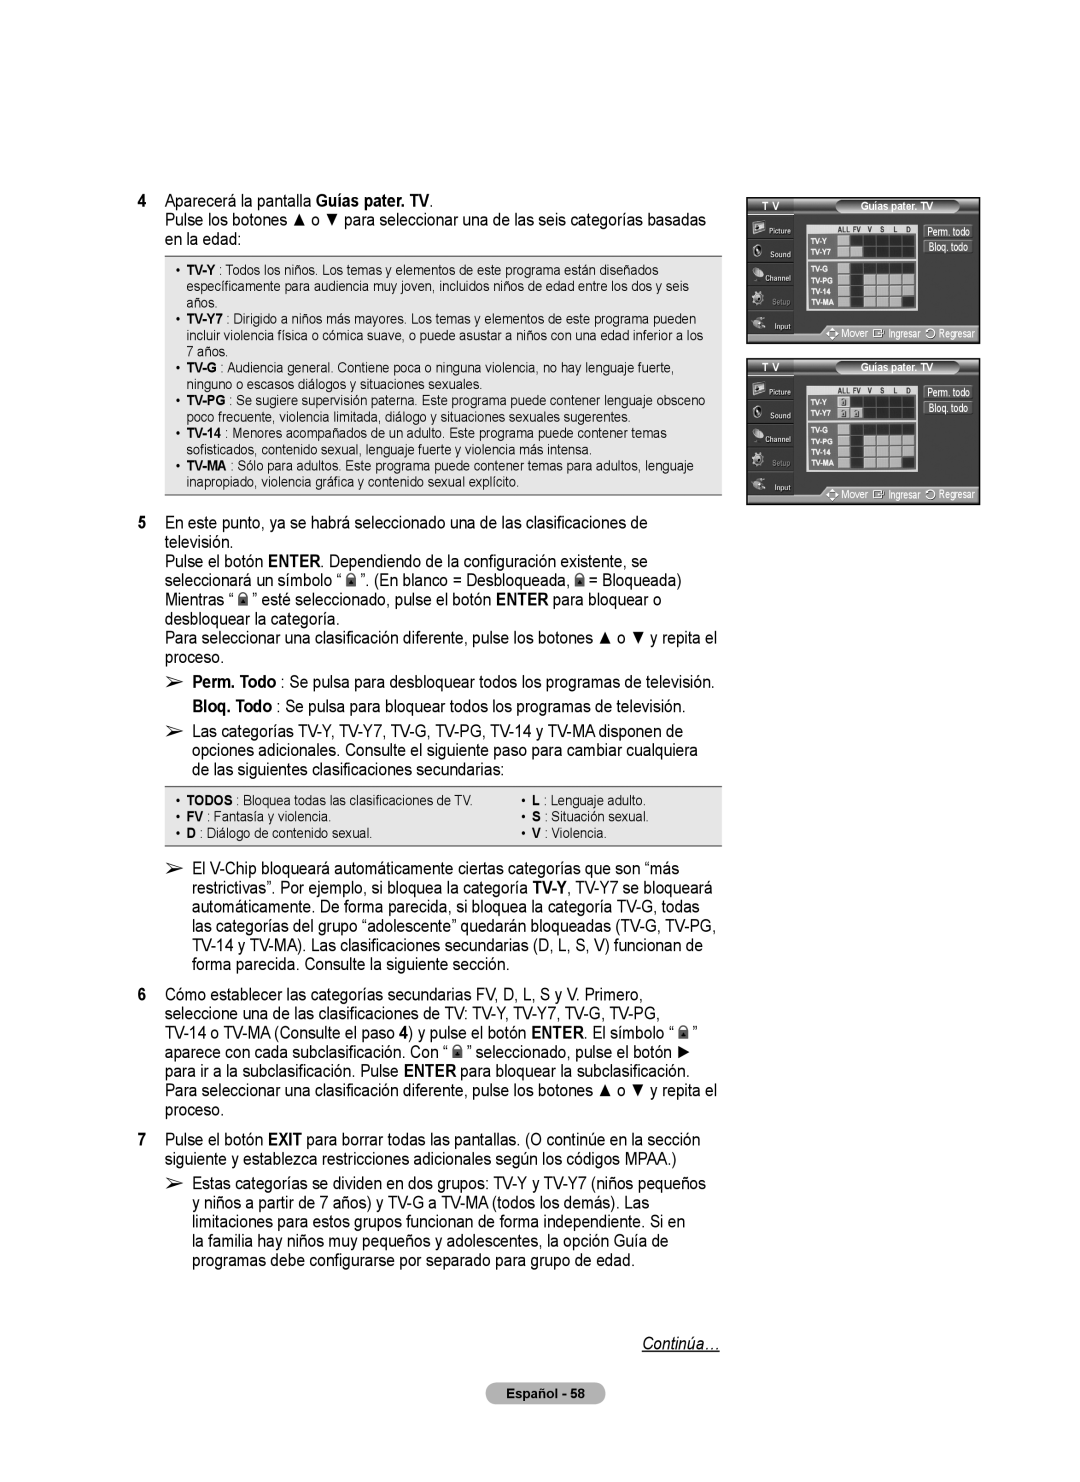 Samsung 460 user manual Continúa…, de las siguientes clasificaciones secundarias 